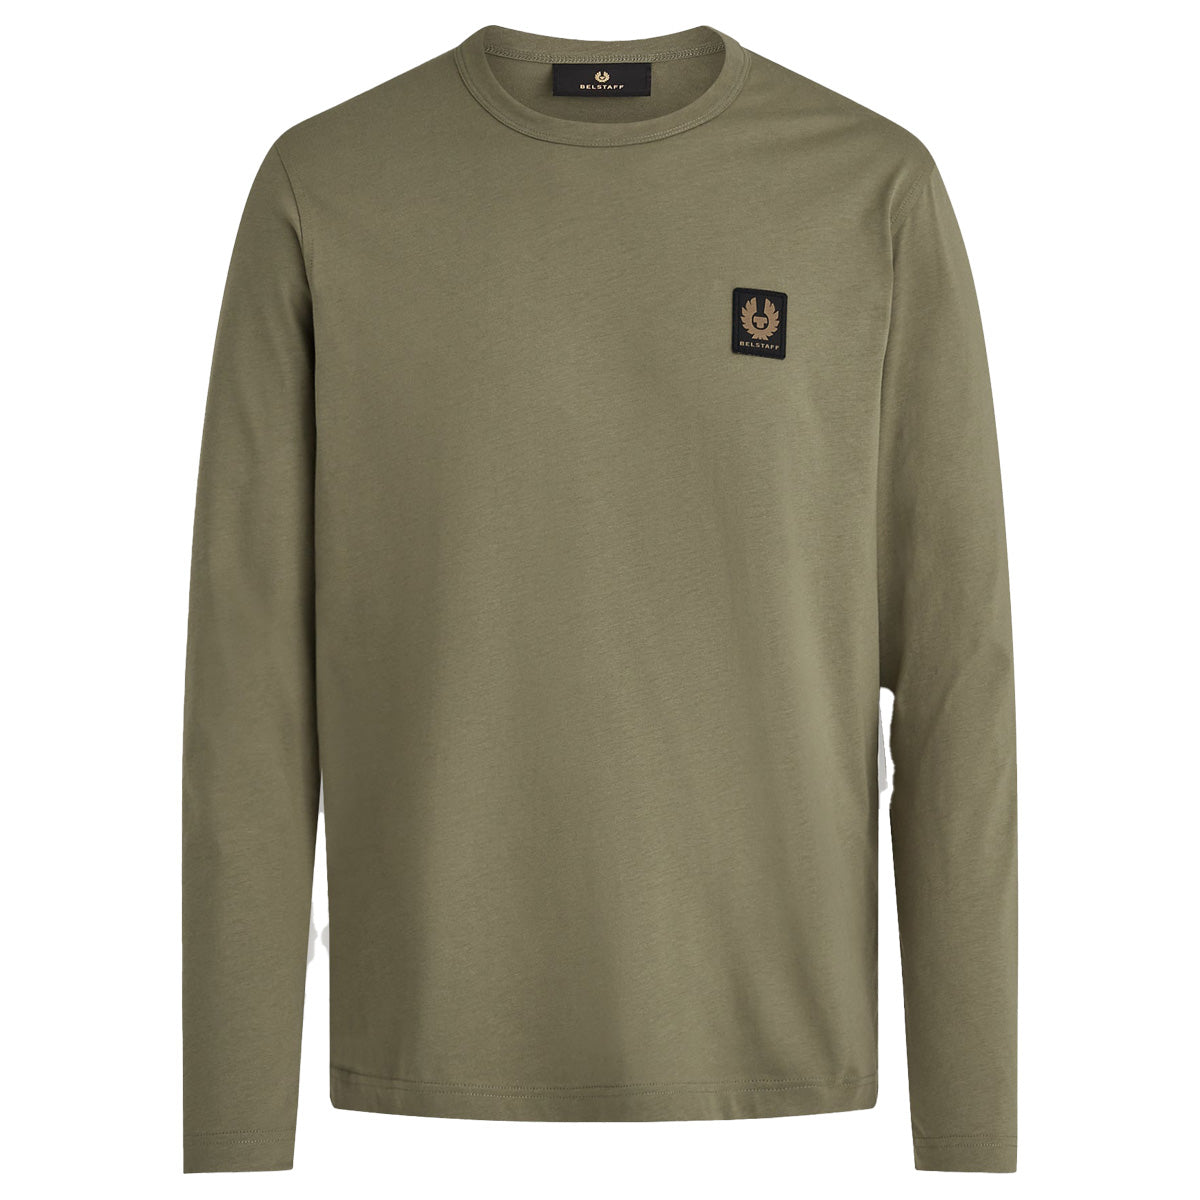 True Olive Long Sleeved Jersey Cotton T-Shirt  Belstaff   